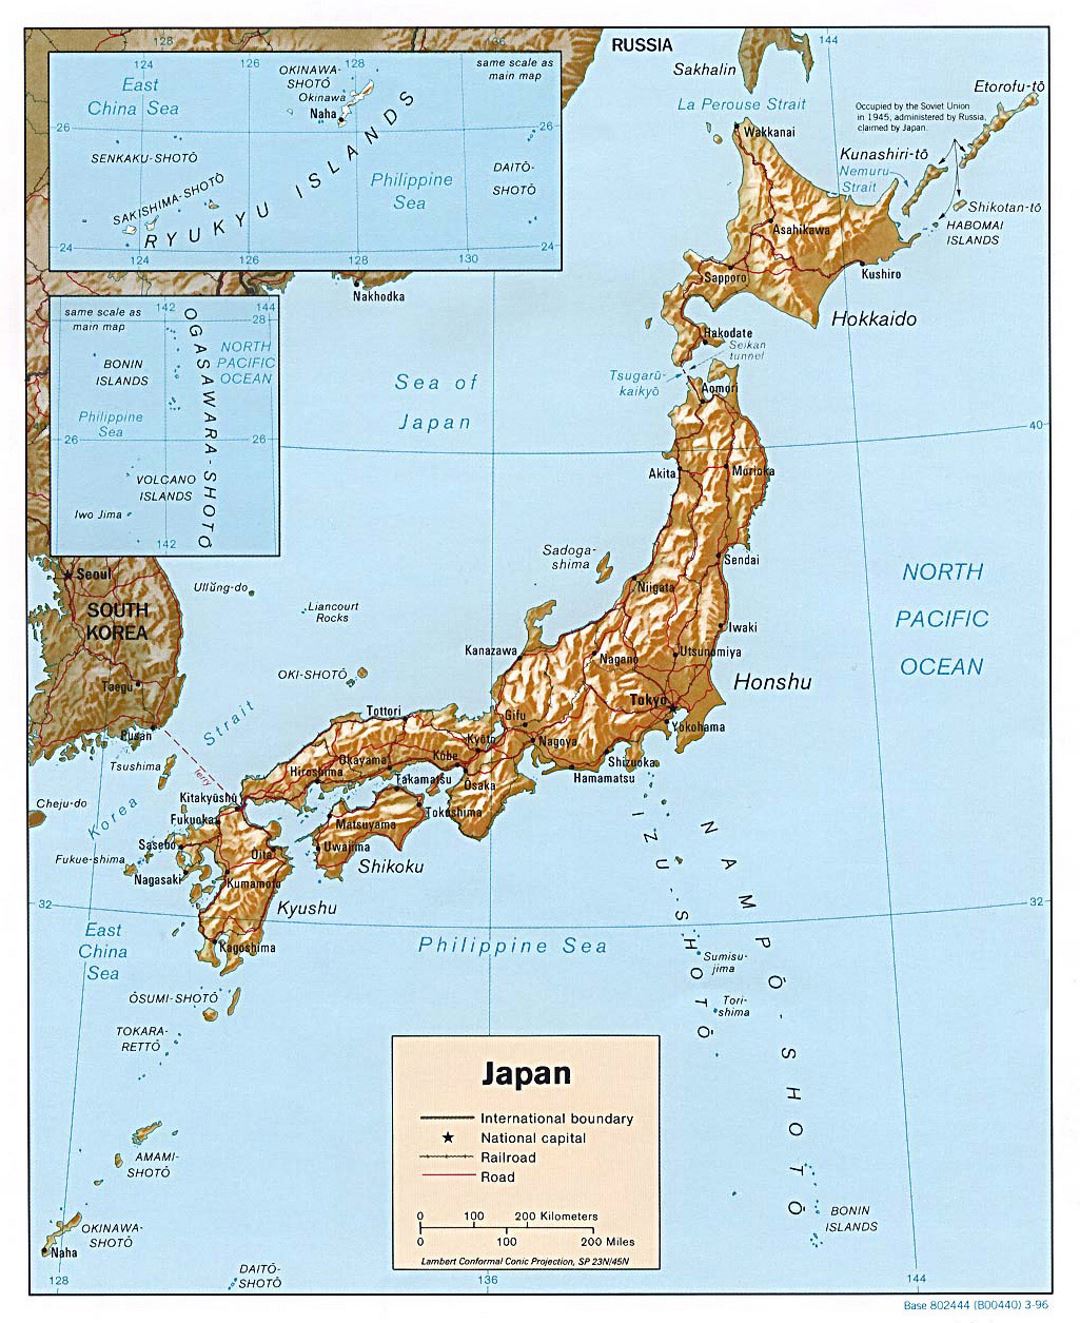 Detallado mapa político de Japón con relieve, carreteras, ferrocarriles y principales ciudades - 1996